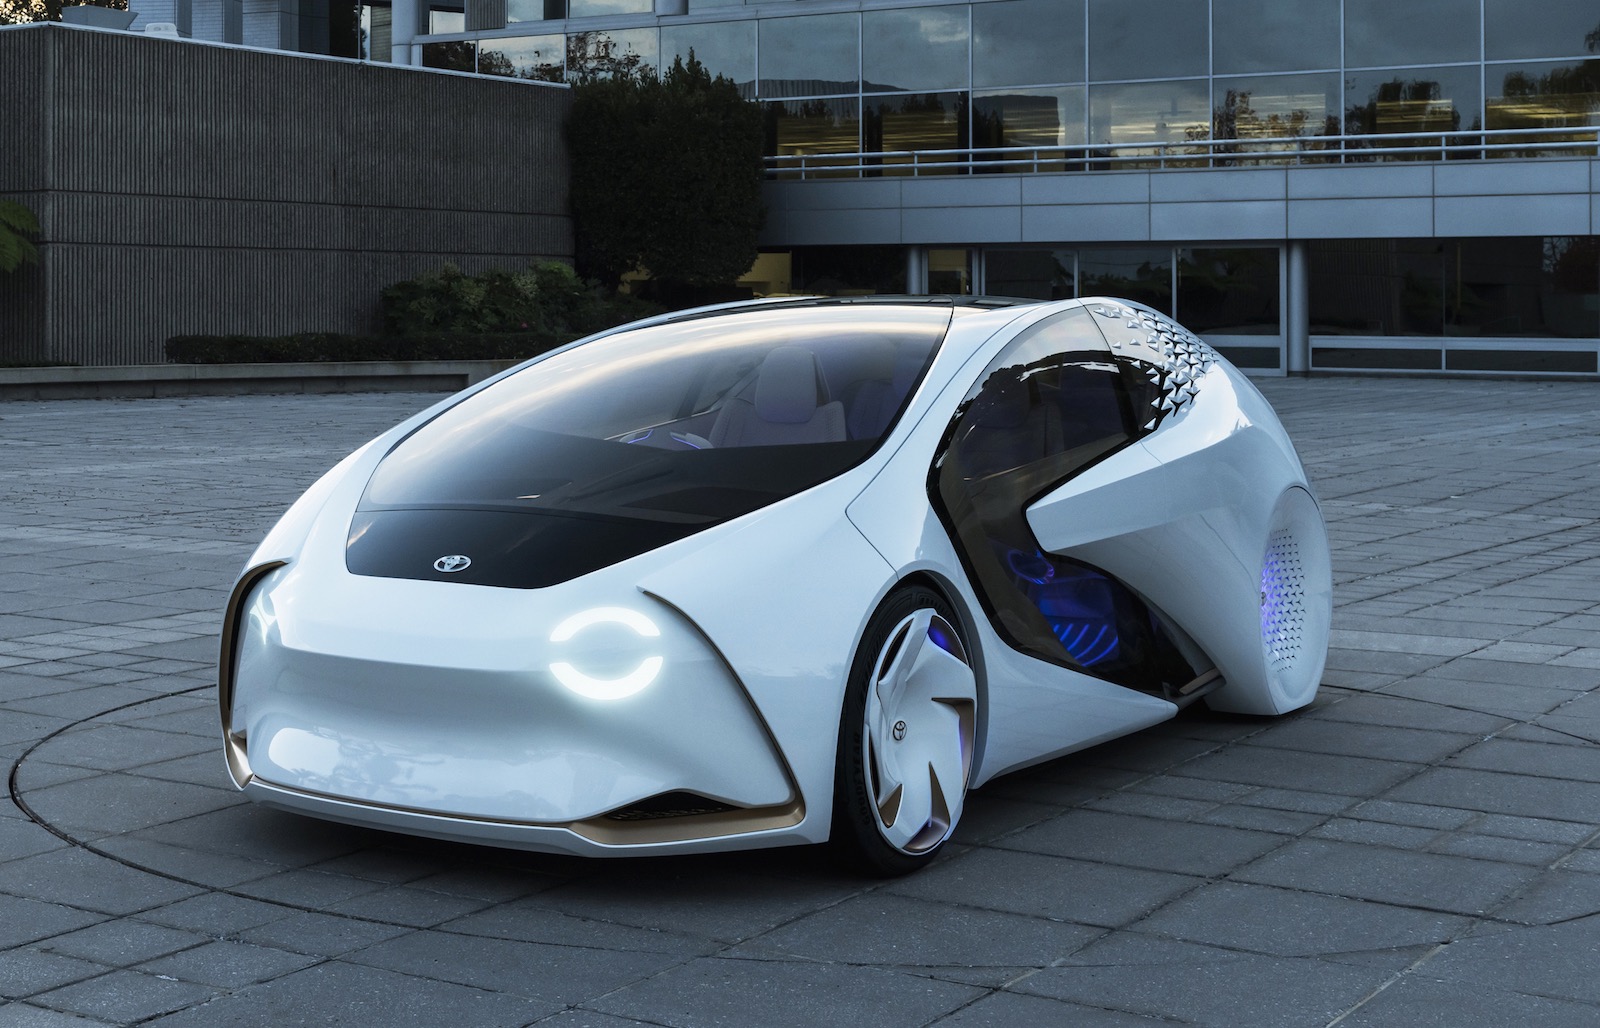 Toyota Concept-i autonomous car unveiled at CES